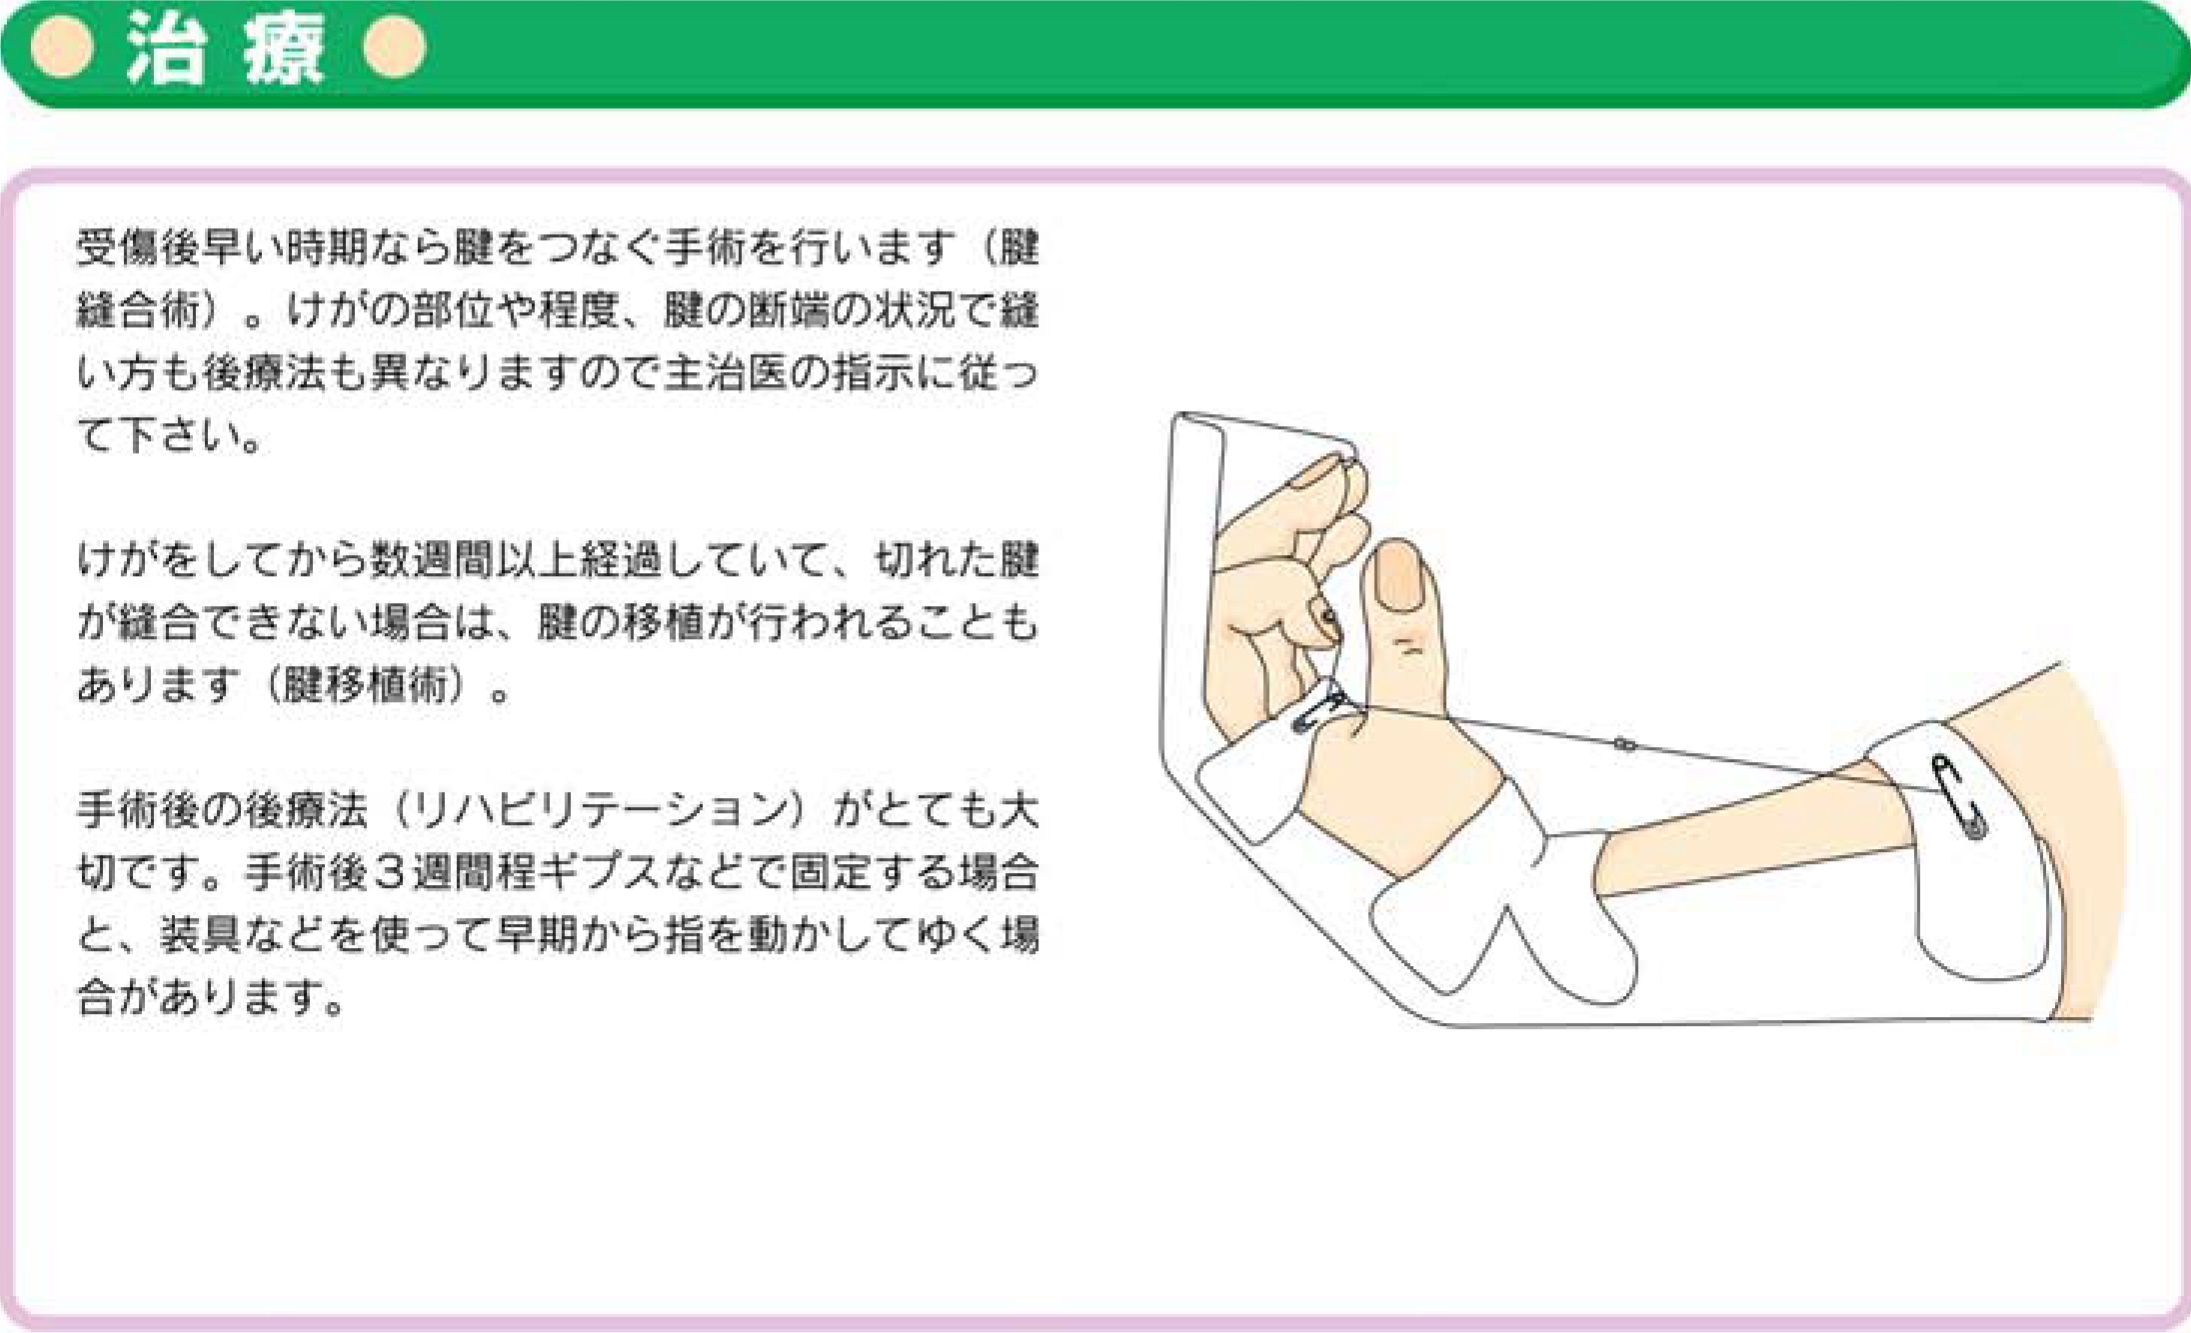 手指の屈筋腱損傷 お知らせ 溝口病院 救急指定病院 福岡